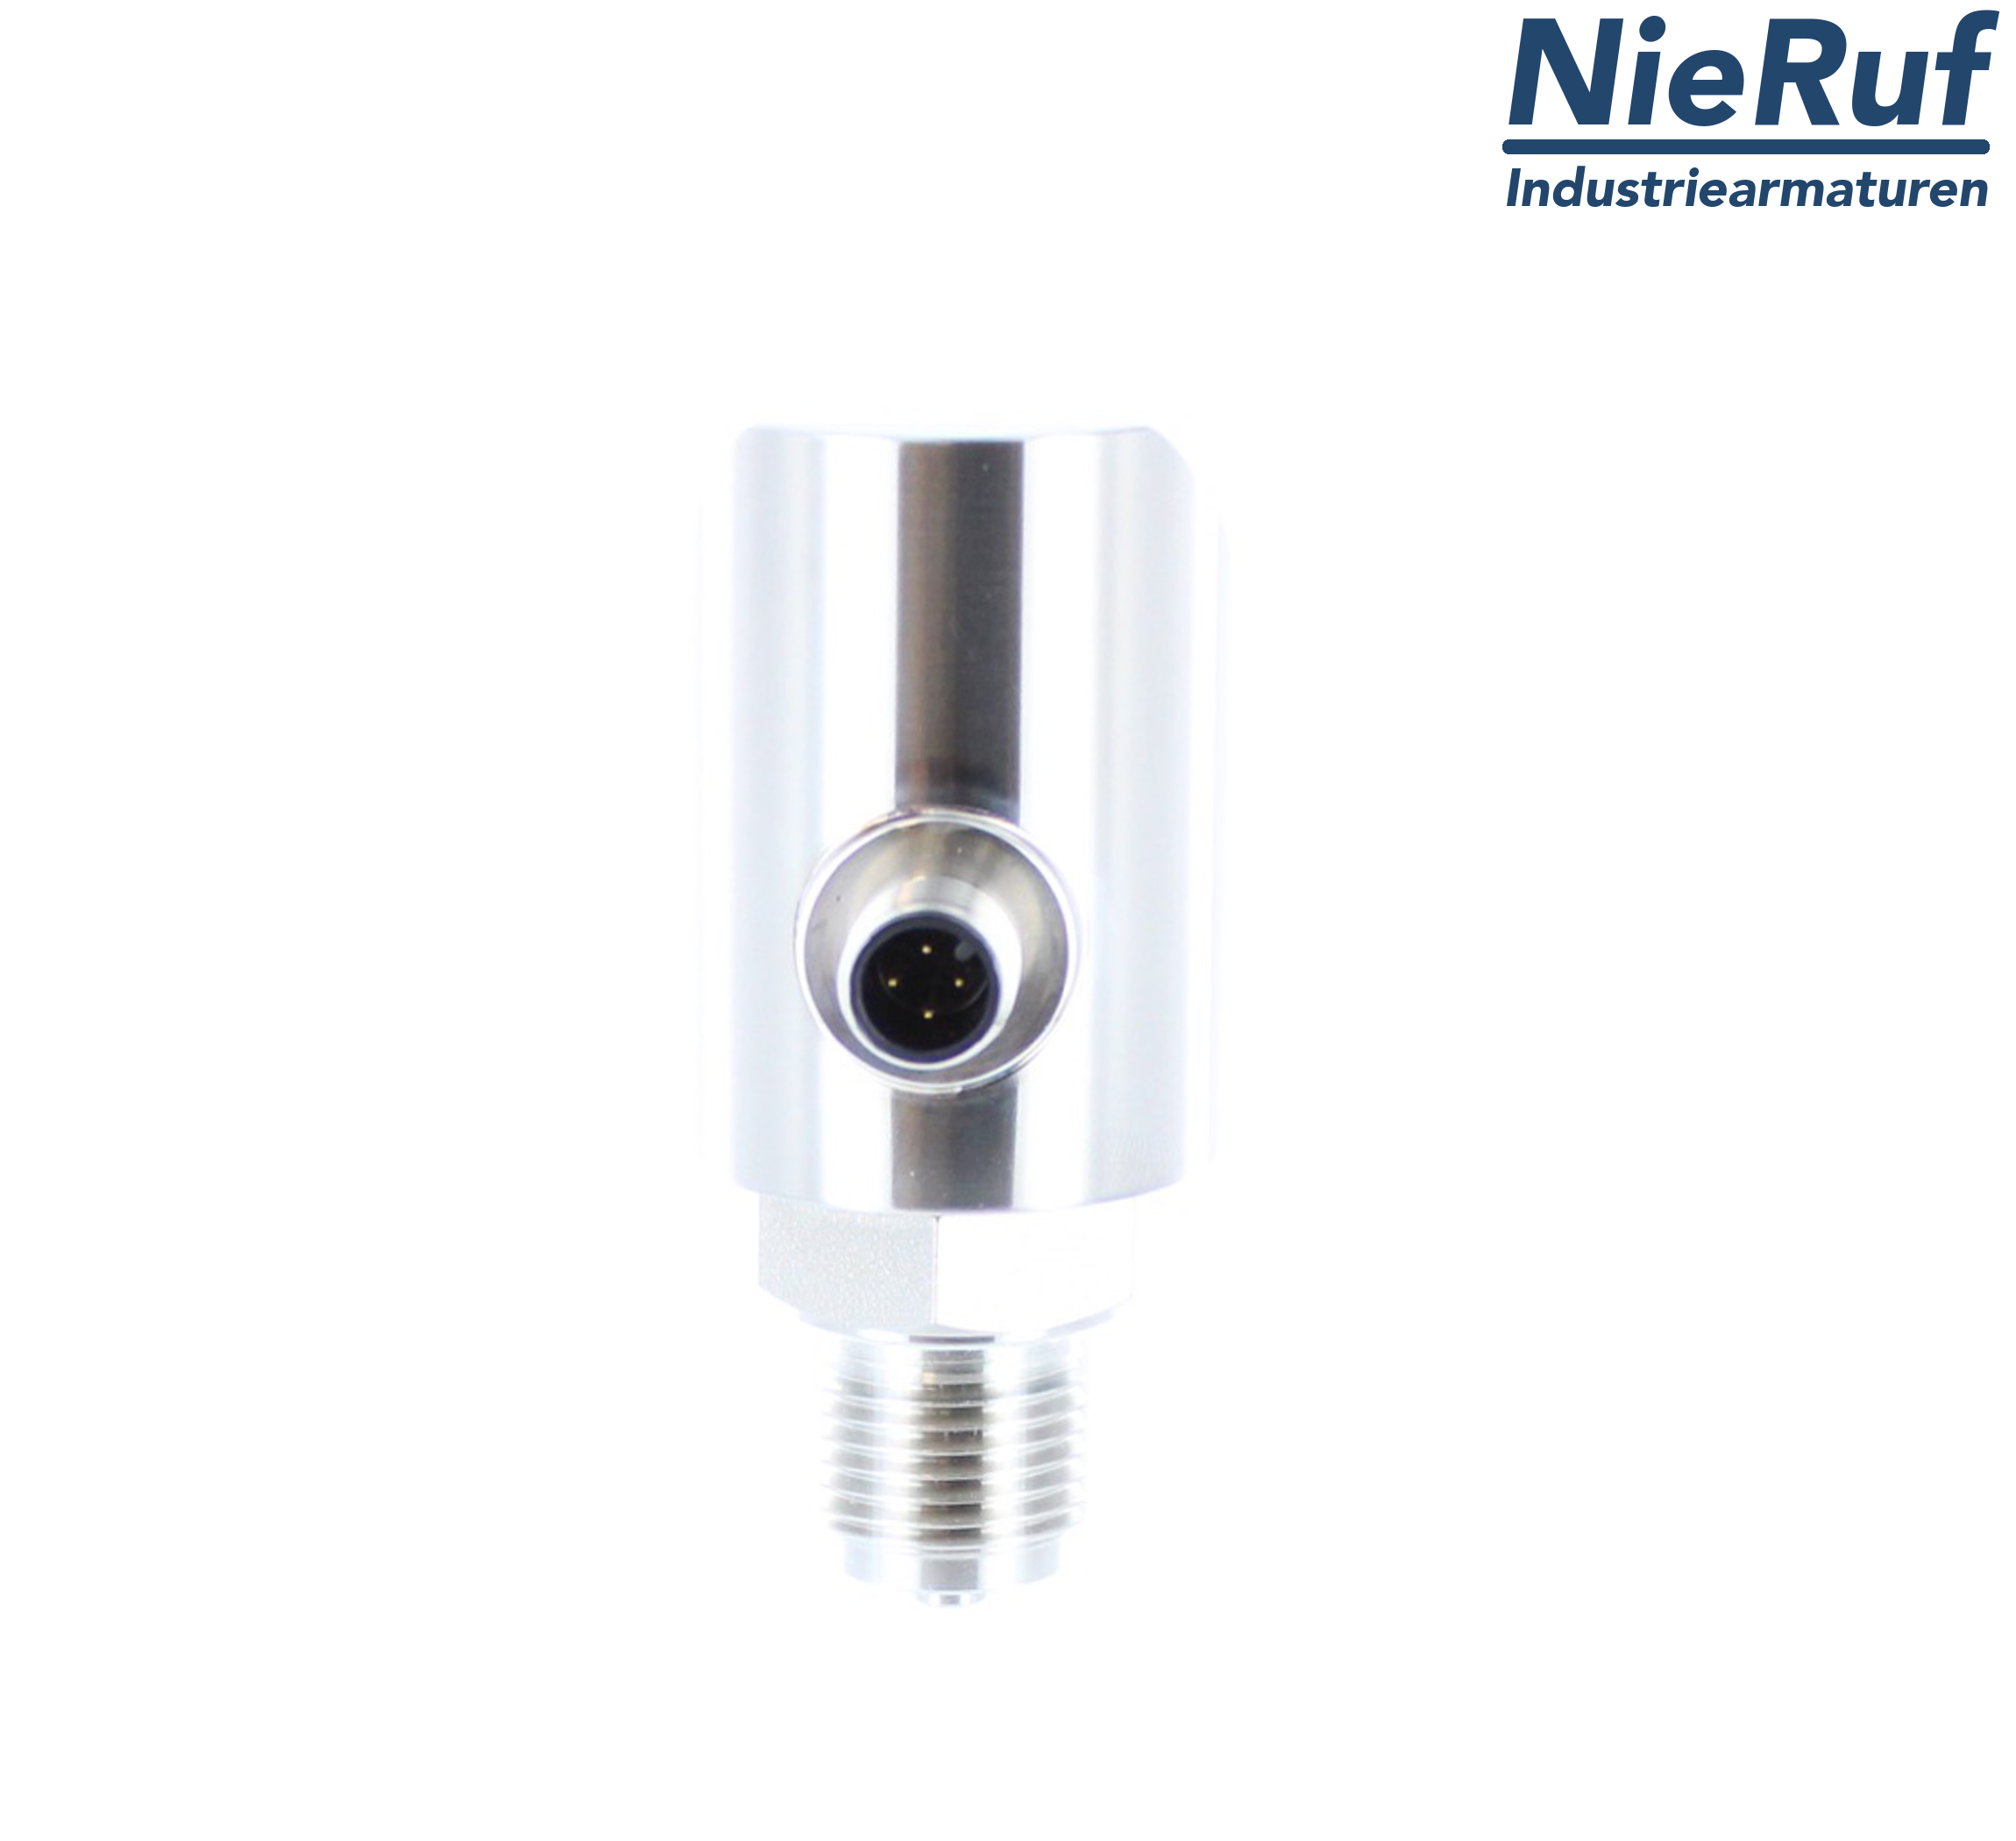 digital pressure sensor G 1/2" B IB 4-wire: 1xPNP, 1x4 - 20mA, Desina FPM 0,0 - 1,6 bar